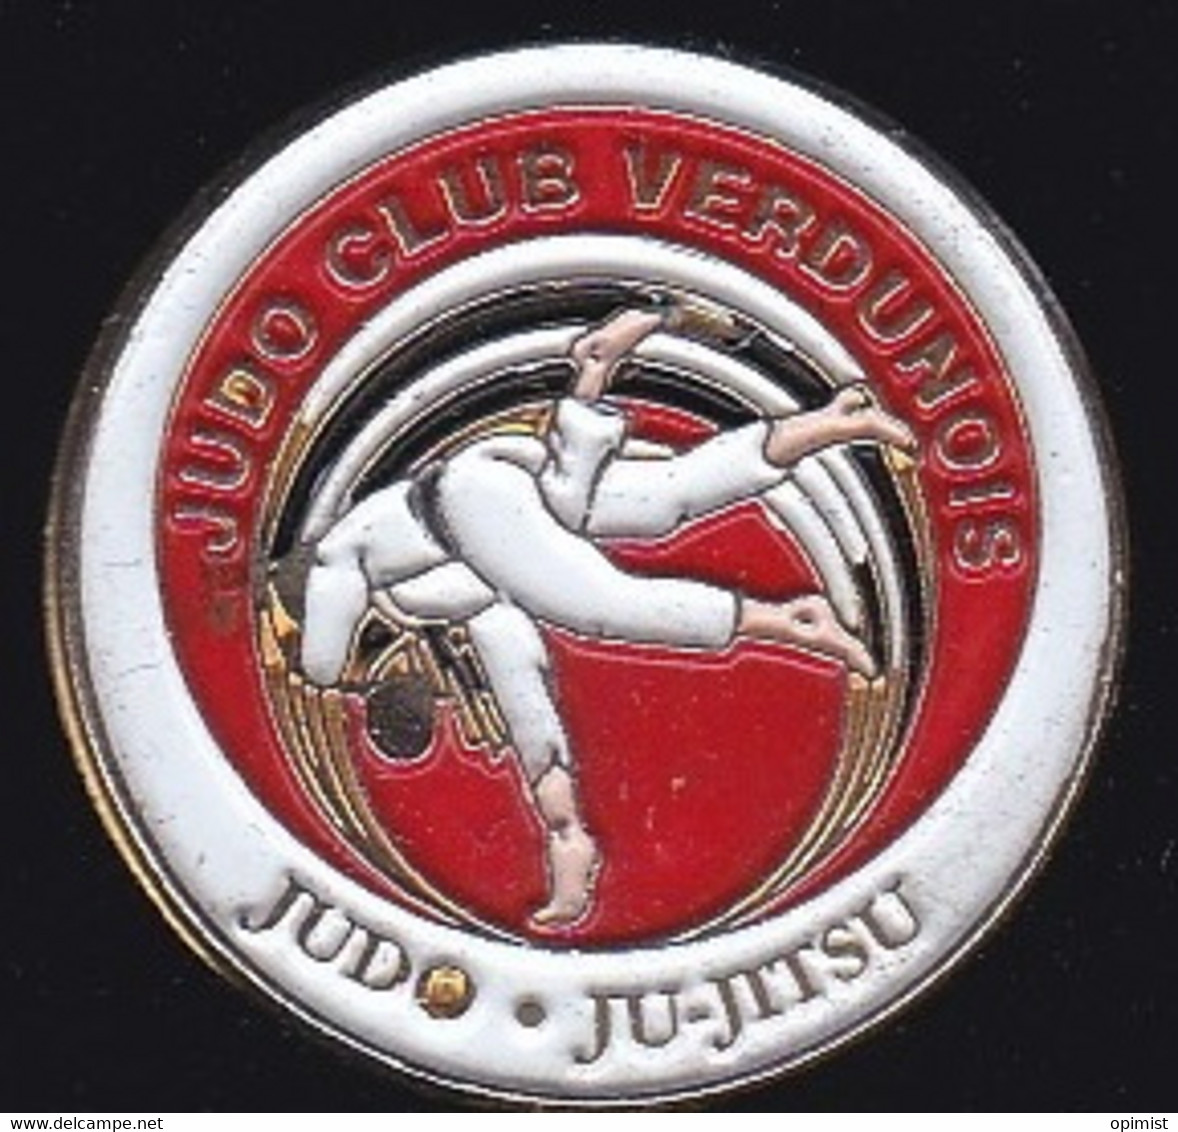 69815- Pin's.Judo Club Verdunois. Verdun. Meuse. - Judo